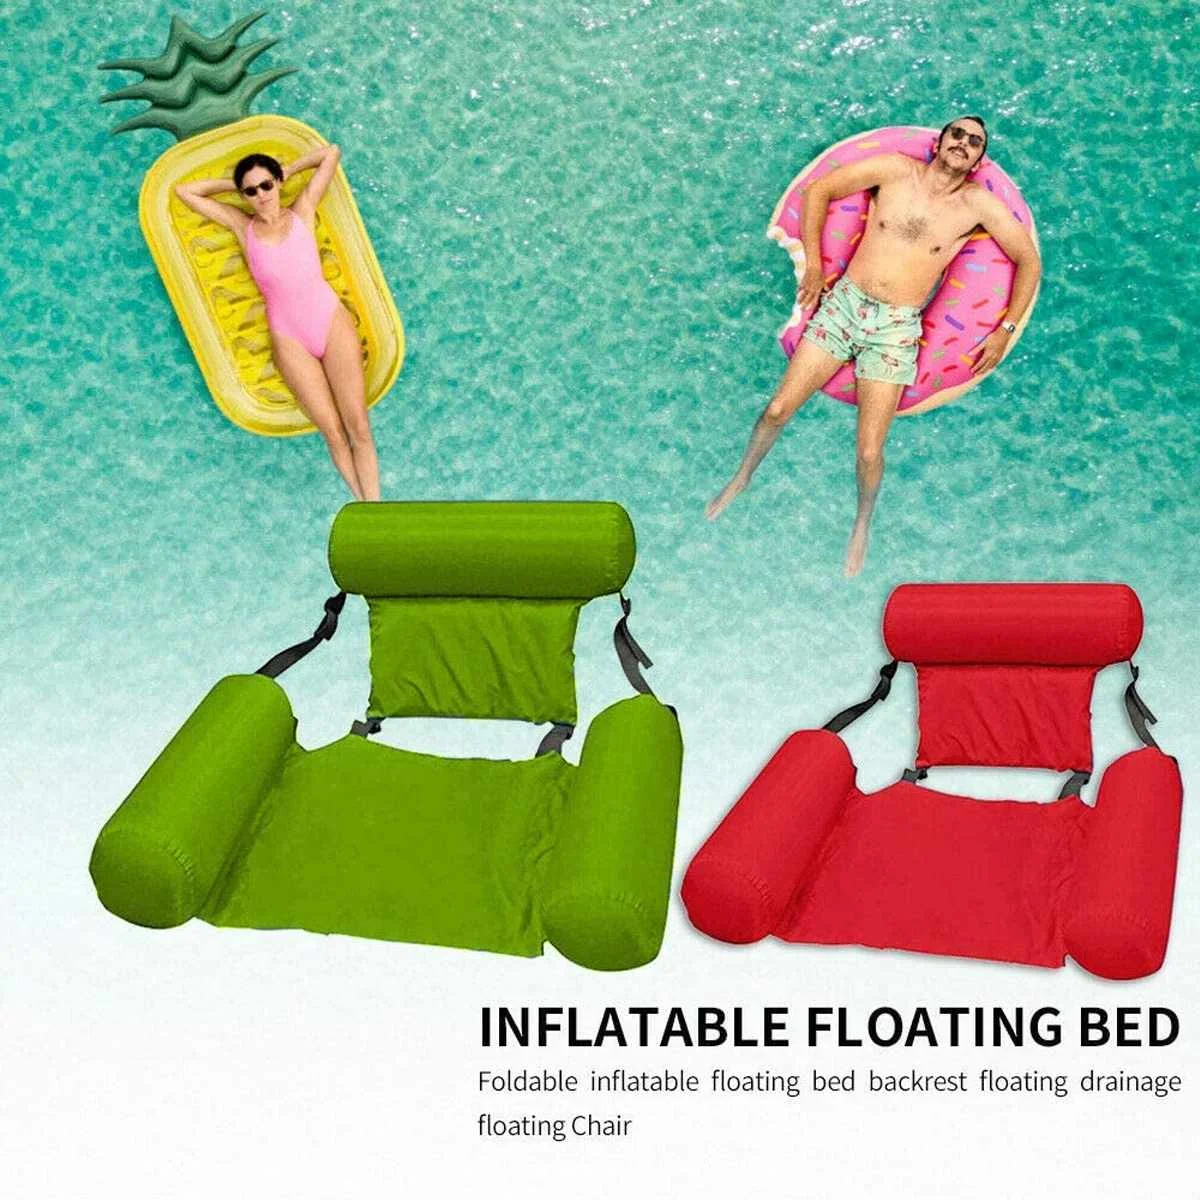 

Летние надувные Складные надувные матрасы со спинкой из ПВХ, для пляжа, бассейна, для занятий водными видами спорта